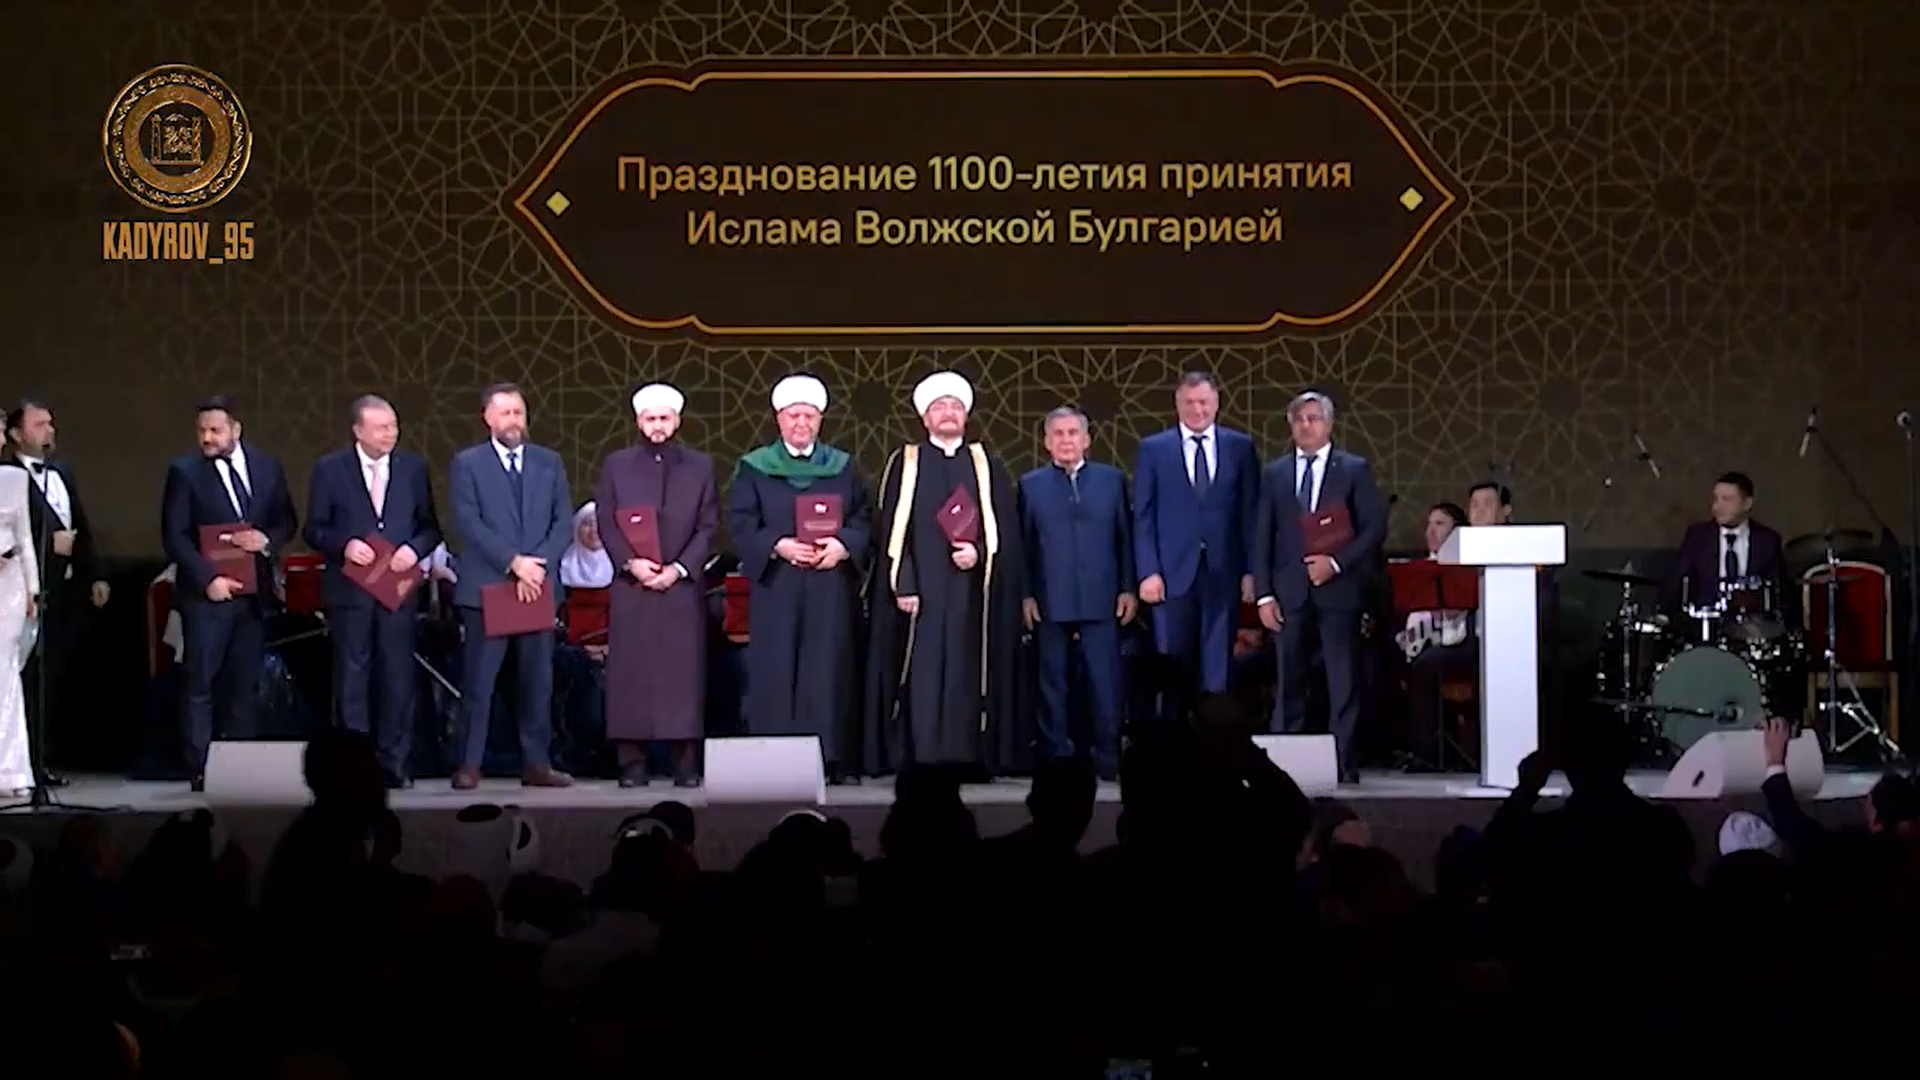 Кадыров: ислам является неотъемлемой частью России